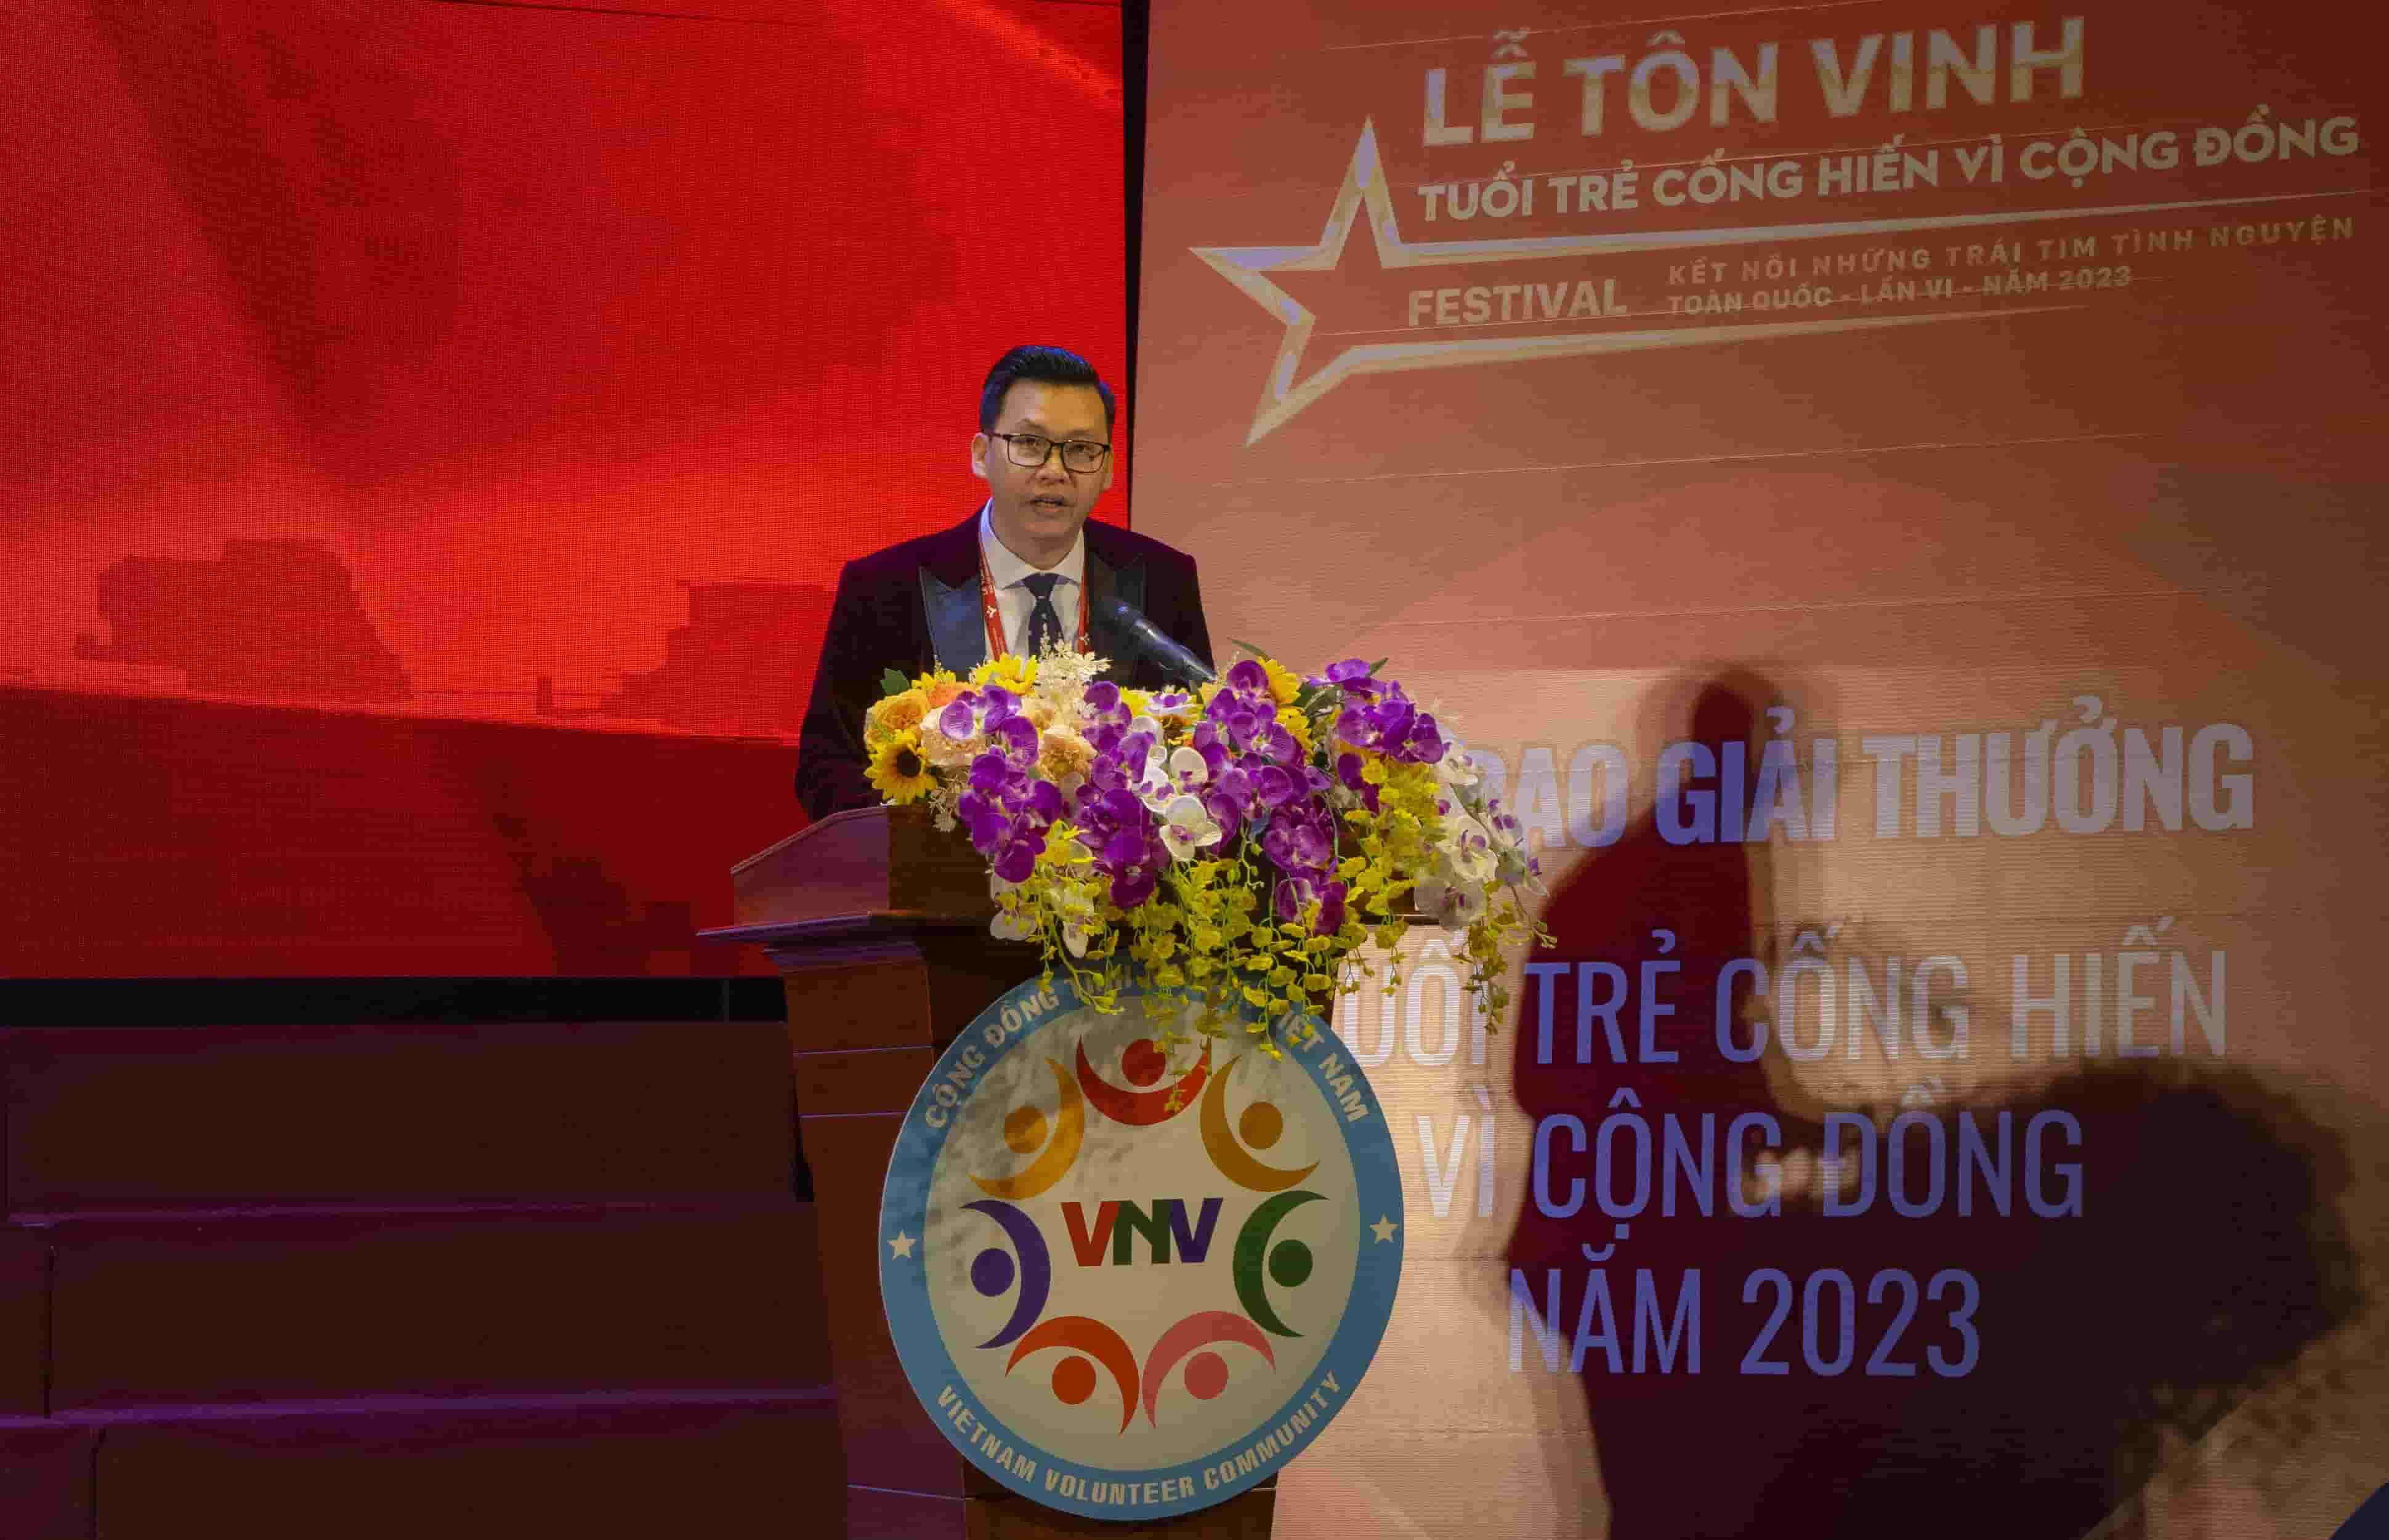 Ông Đỗ Văn Dệ - Chủ tịch Cộng đồng tình nguyện Việt Nam, Trưởng Ban tổ chức đánh giá cao những đóng góp của các thủ lĩnh tình nguyện. Ảnh BTC